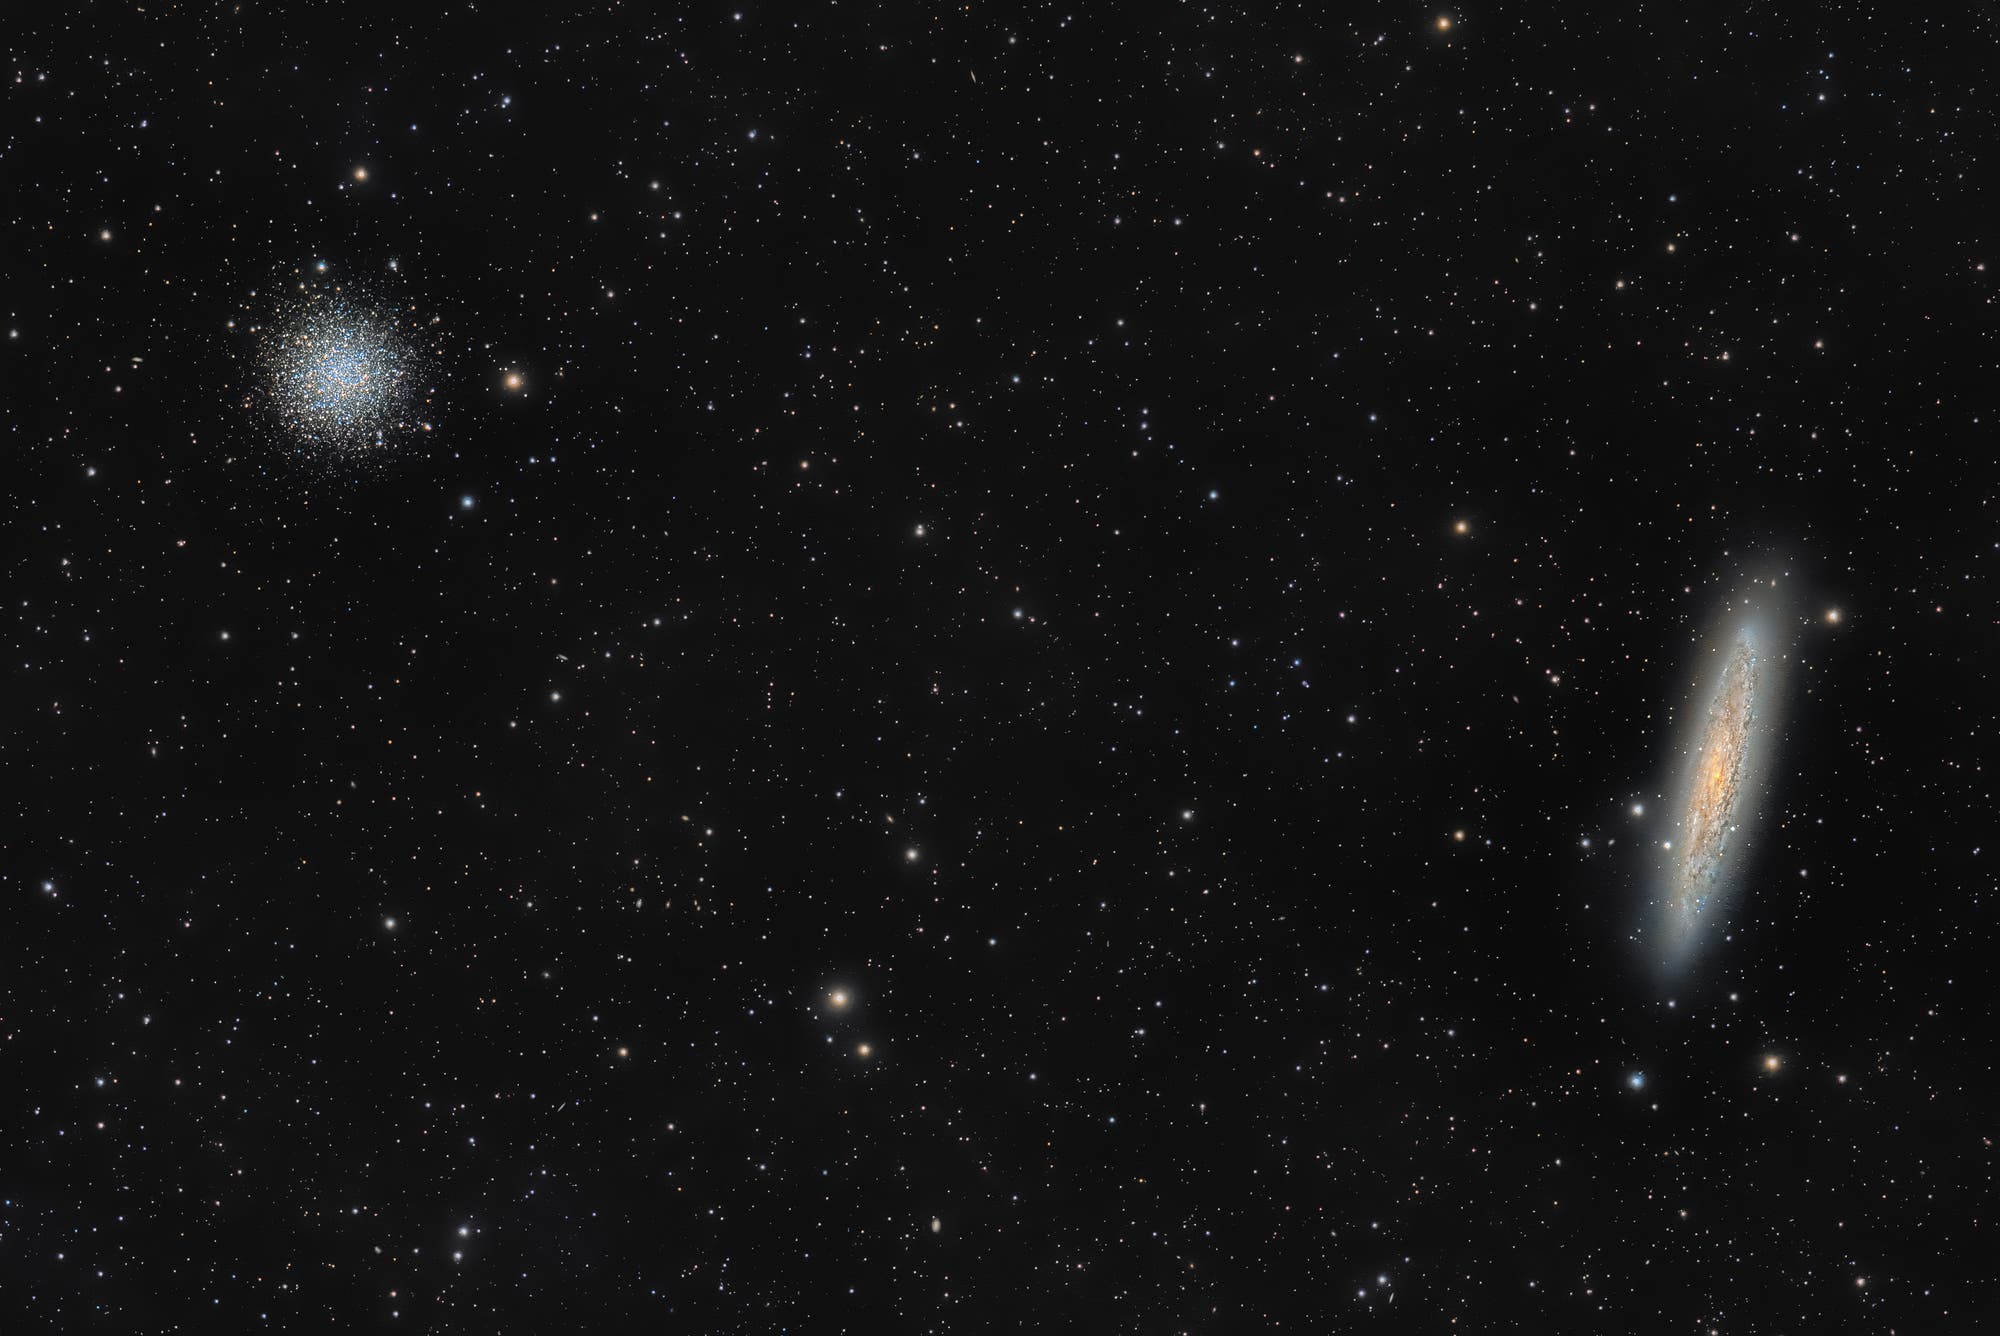 Sculptor-Galaxie und Kugelsternhaufen NGC 288